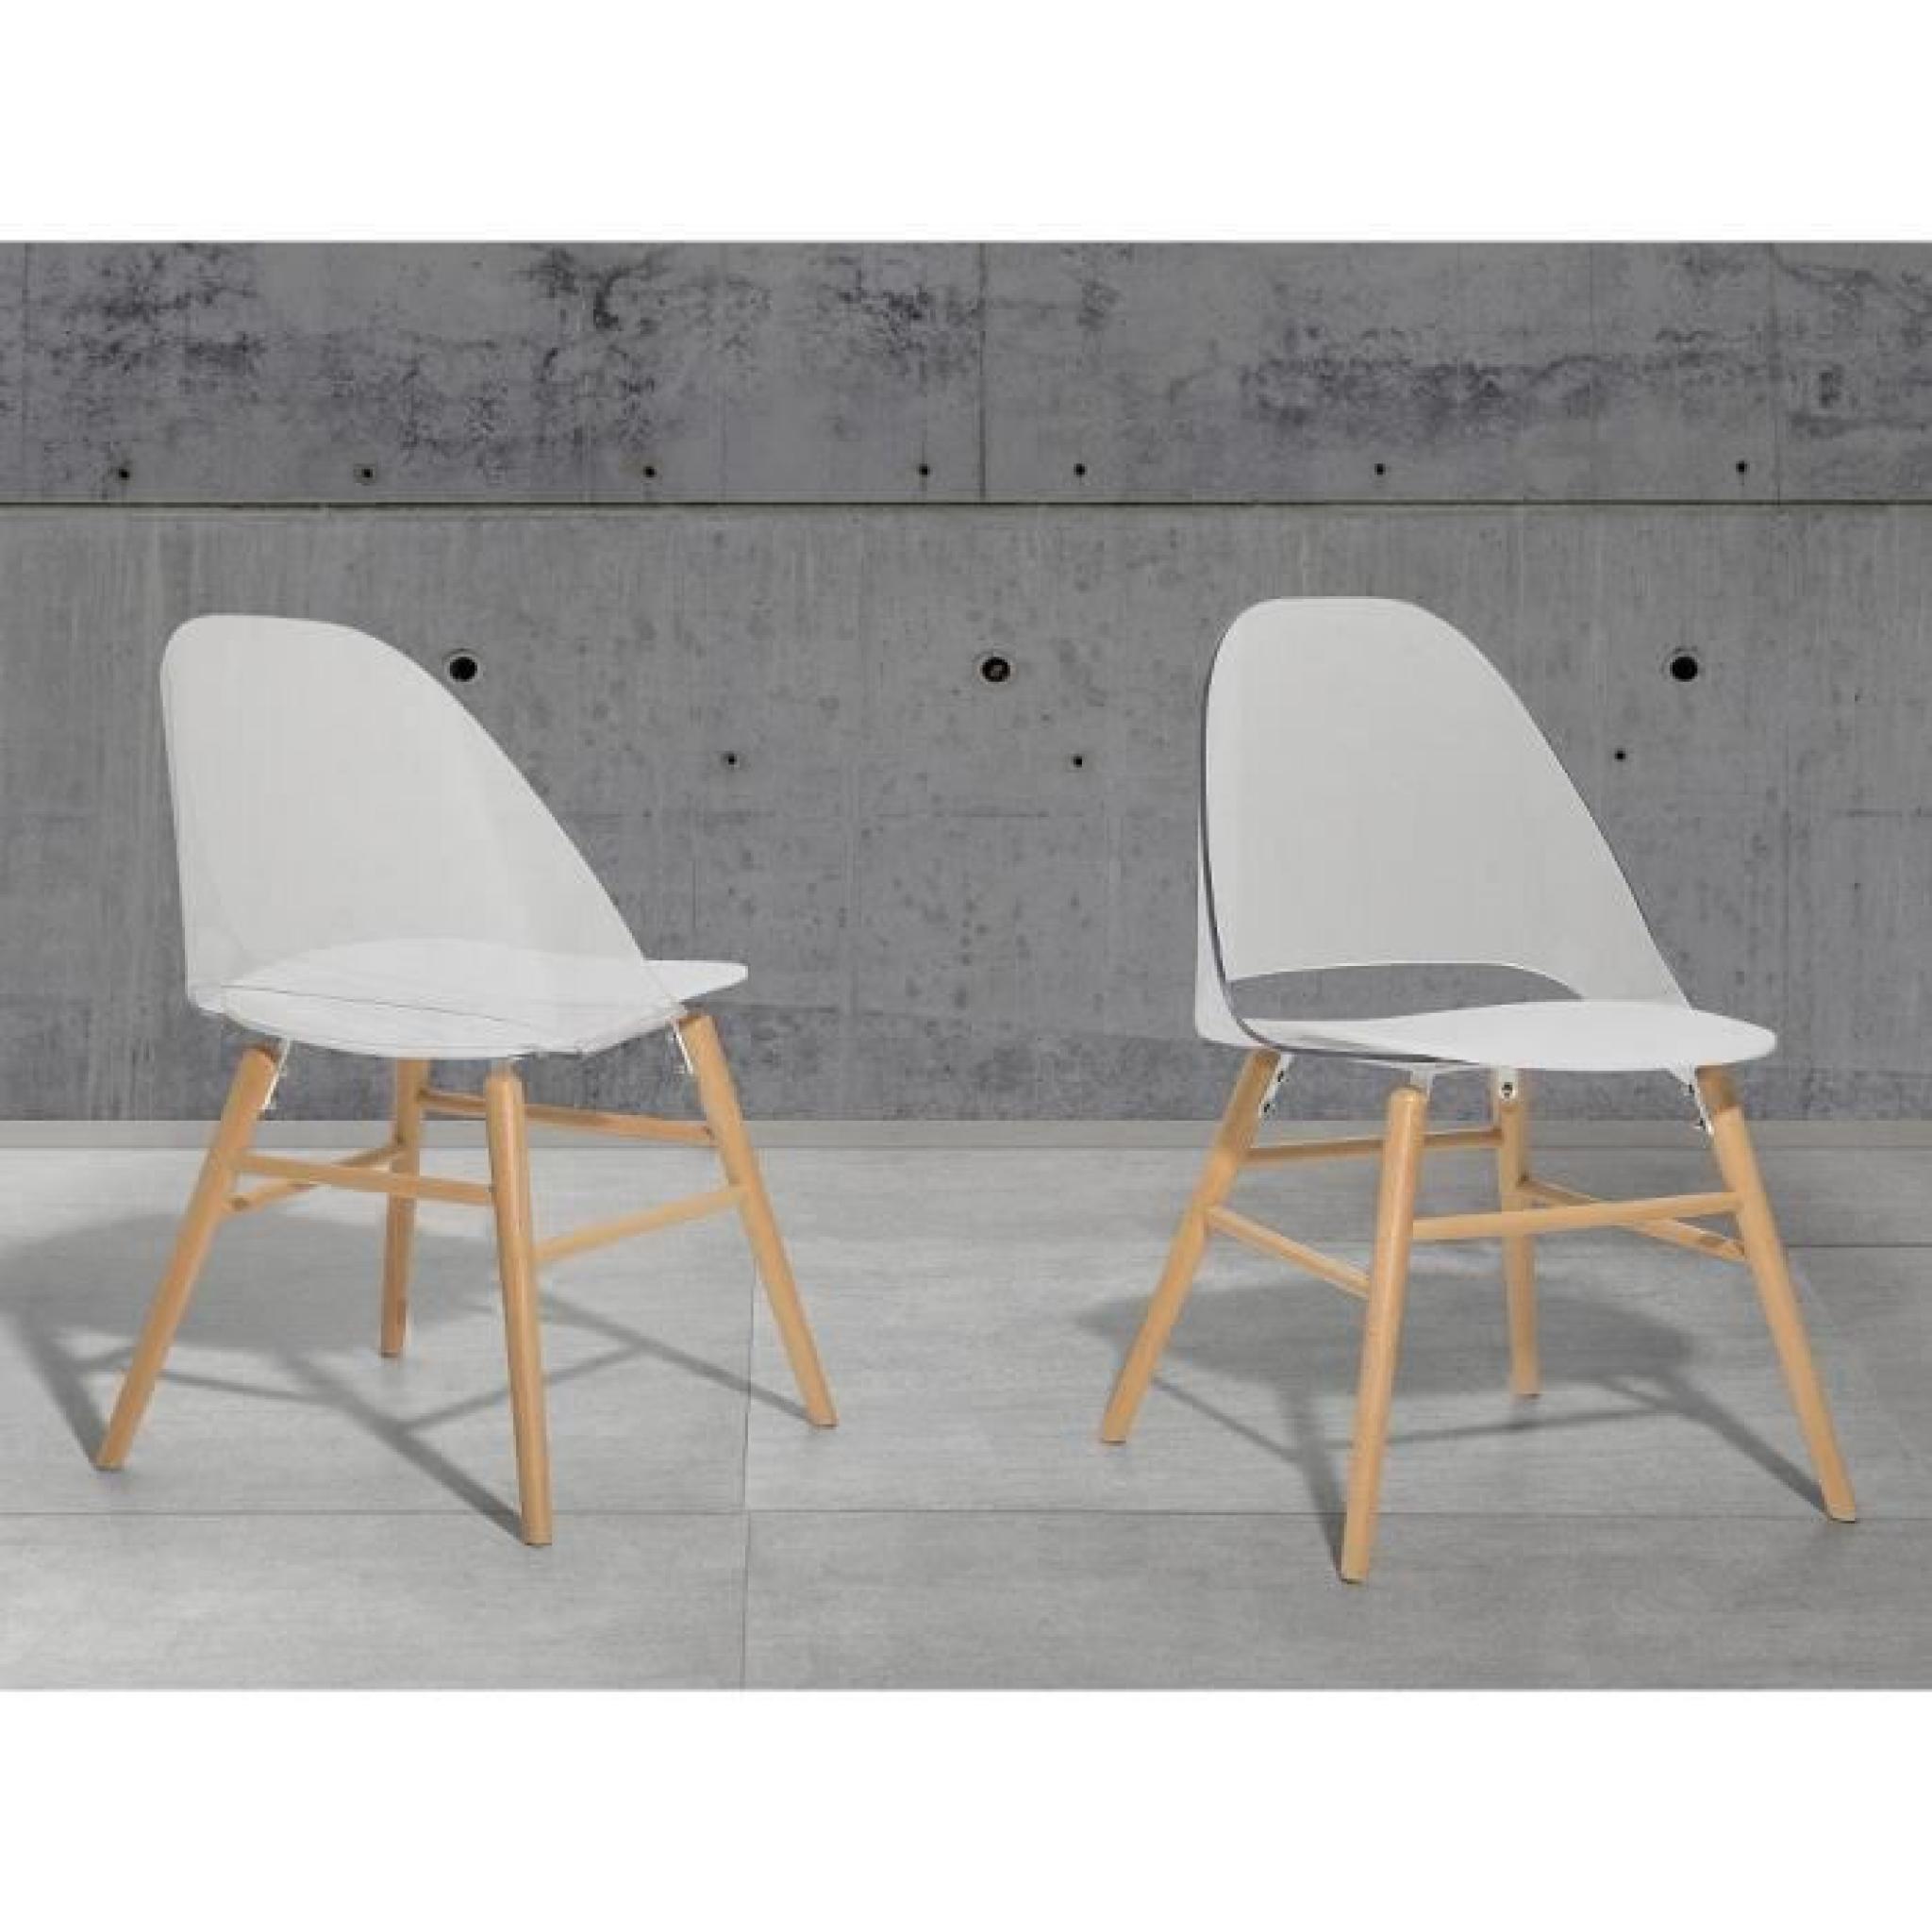 Chaise design - siège en plastique blanc / transparent - Milford